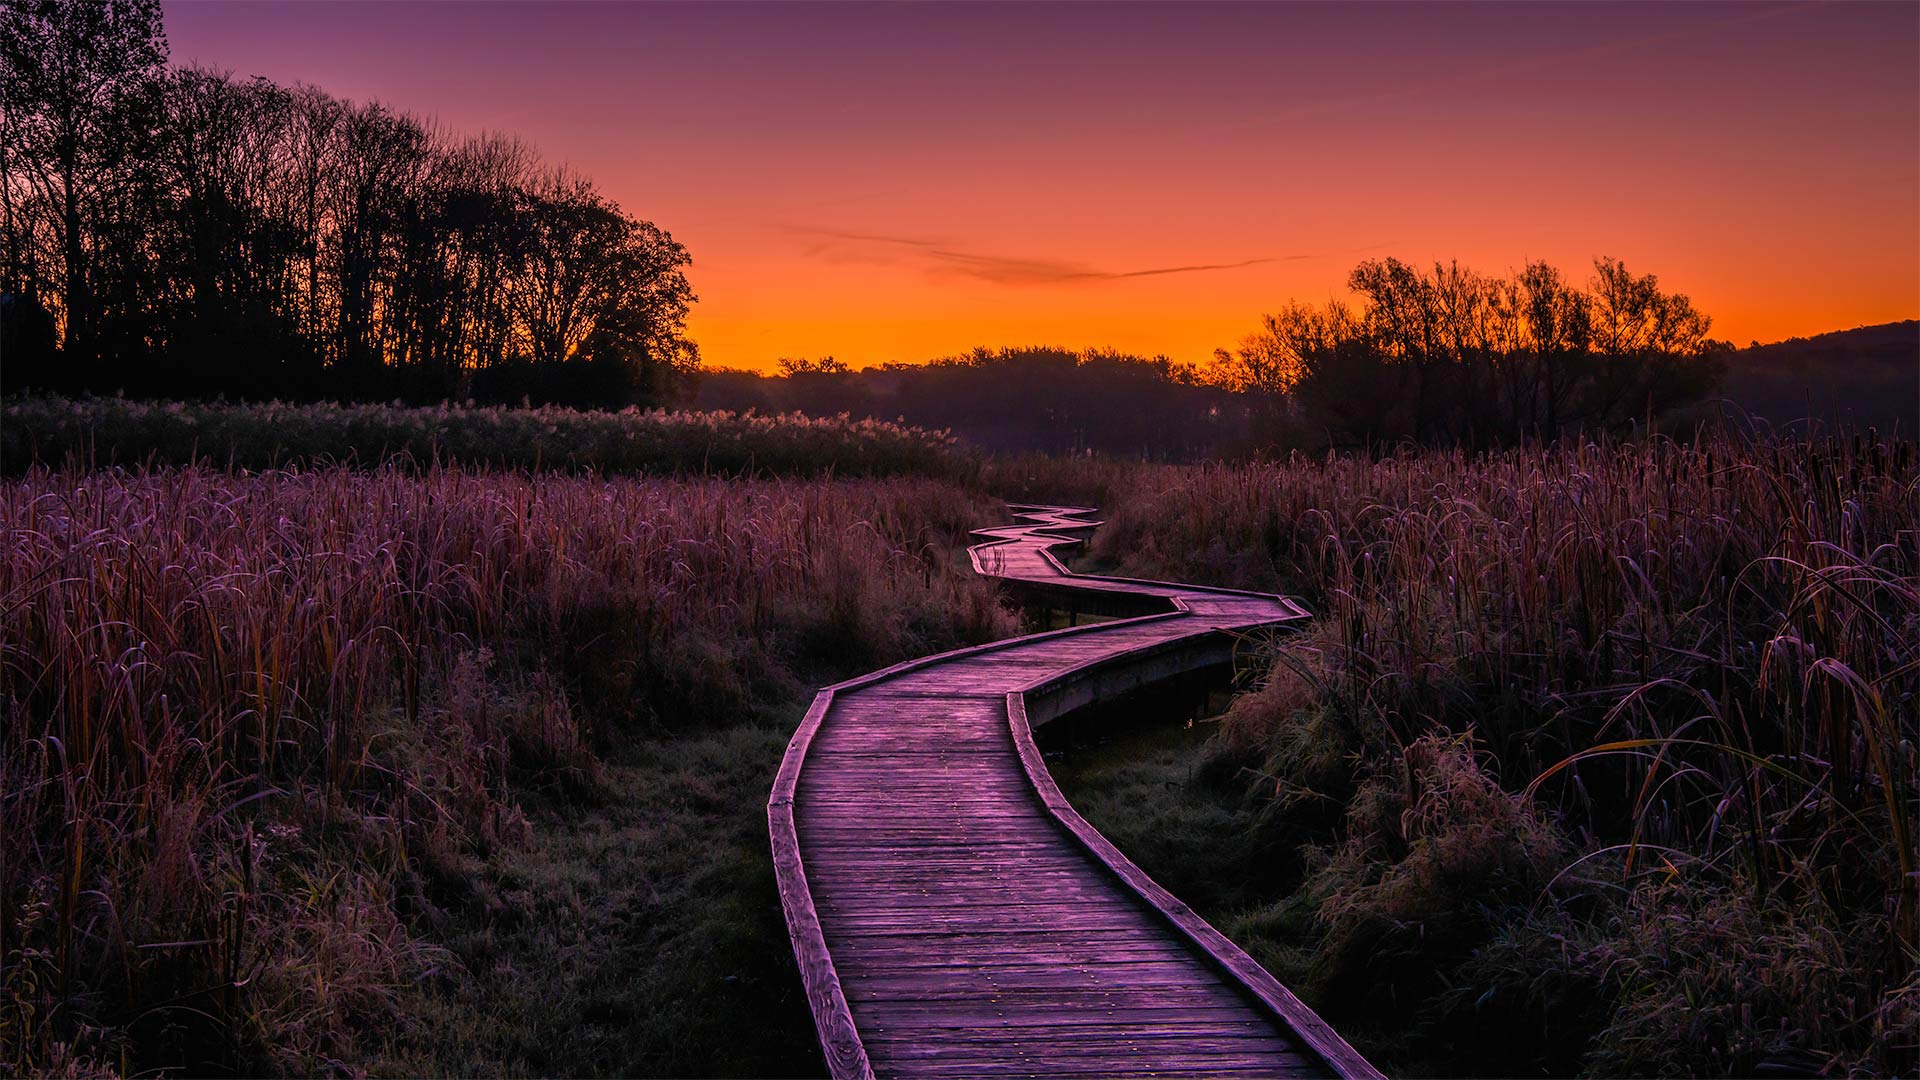 必应壁纸:天堂之路，新泽西州瓦瓦安达州立公园 (© Leembe/Getty Images)